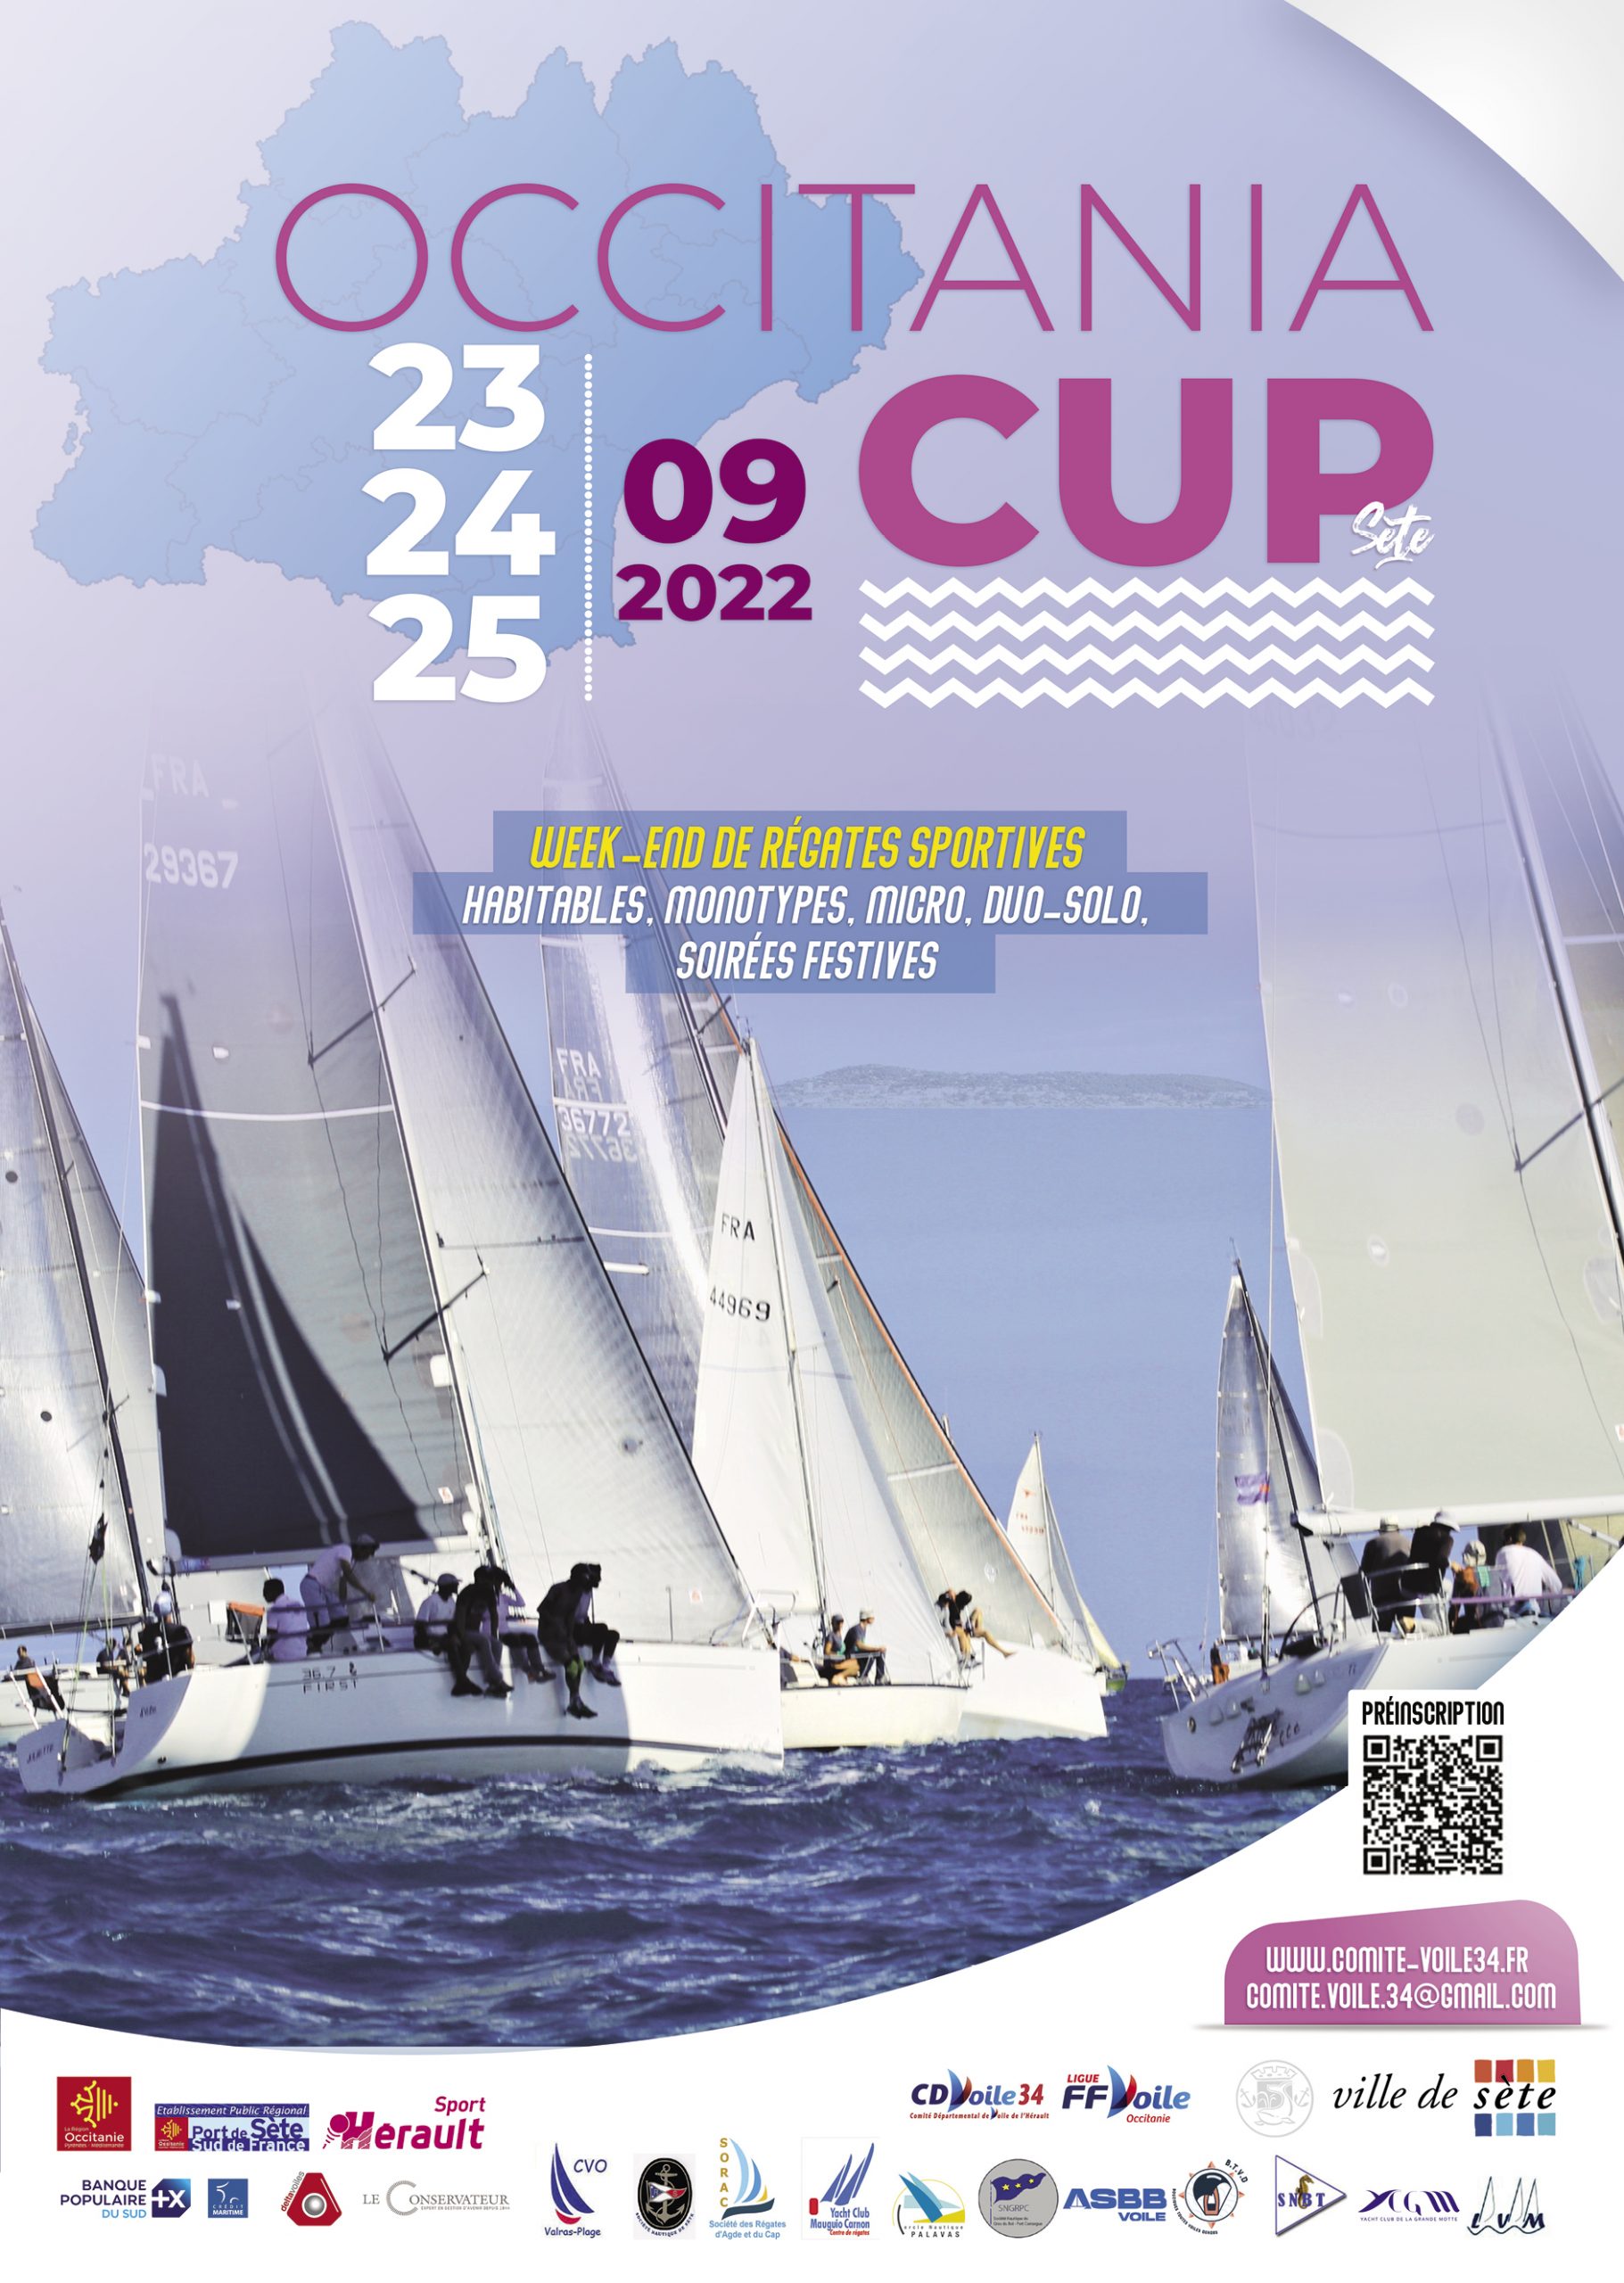 You are currently viewing Occitania Cup est de retour à Sète du 23 au 25 septembre 2022